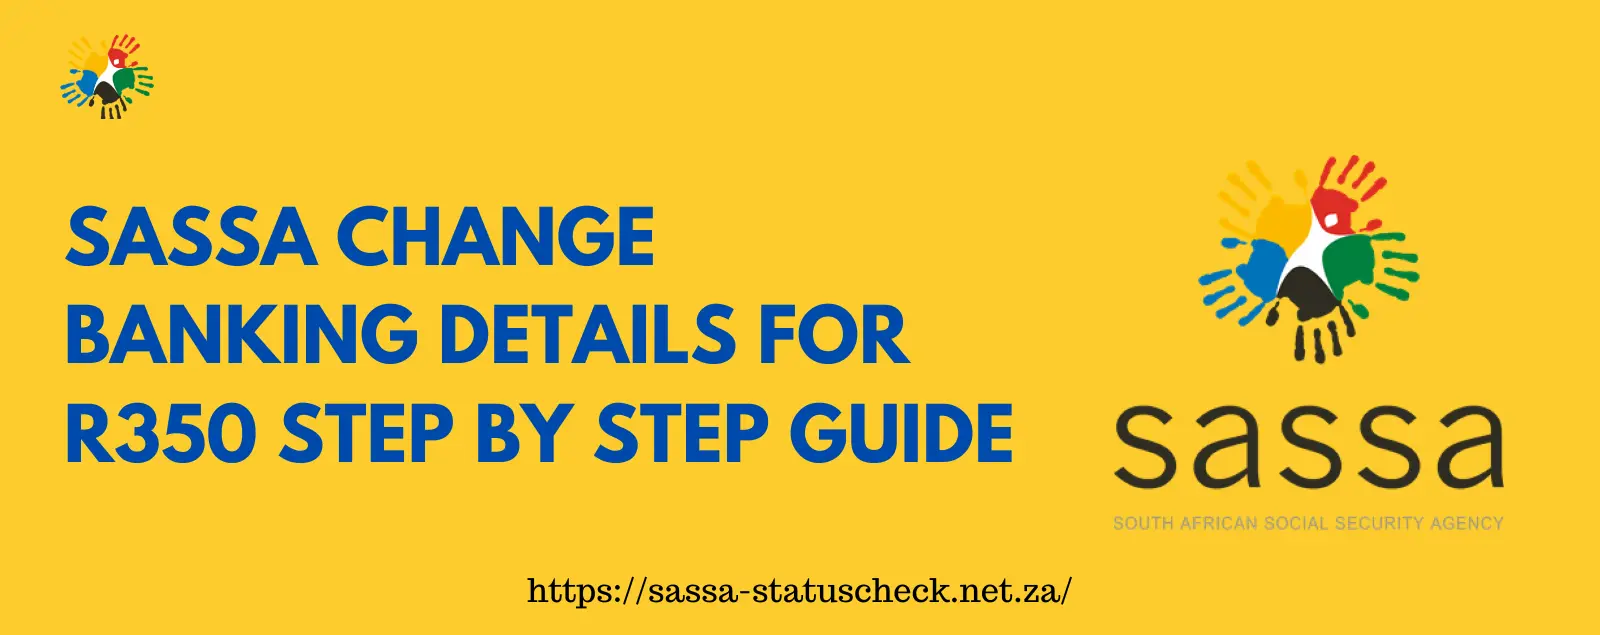 SASSA Change Banking Details